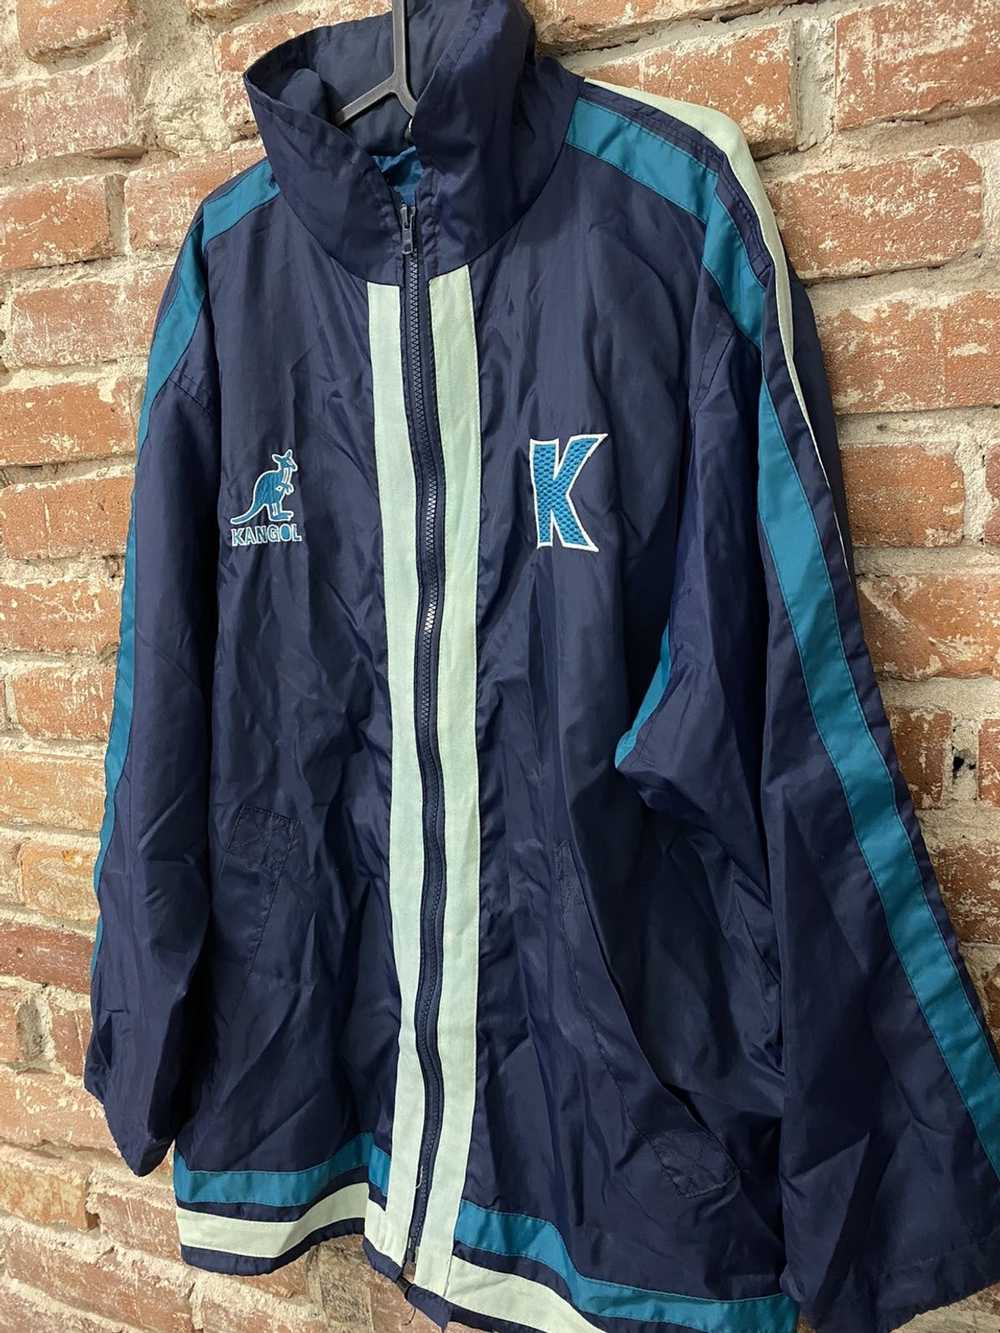 Kangol Kangol jacket made in England vintage 90s - image 2